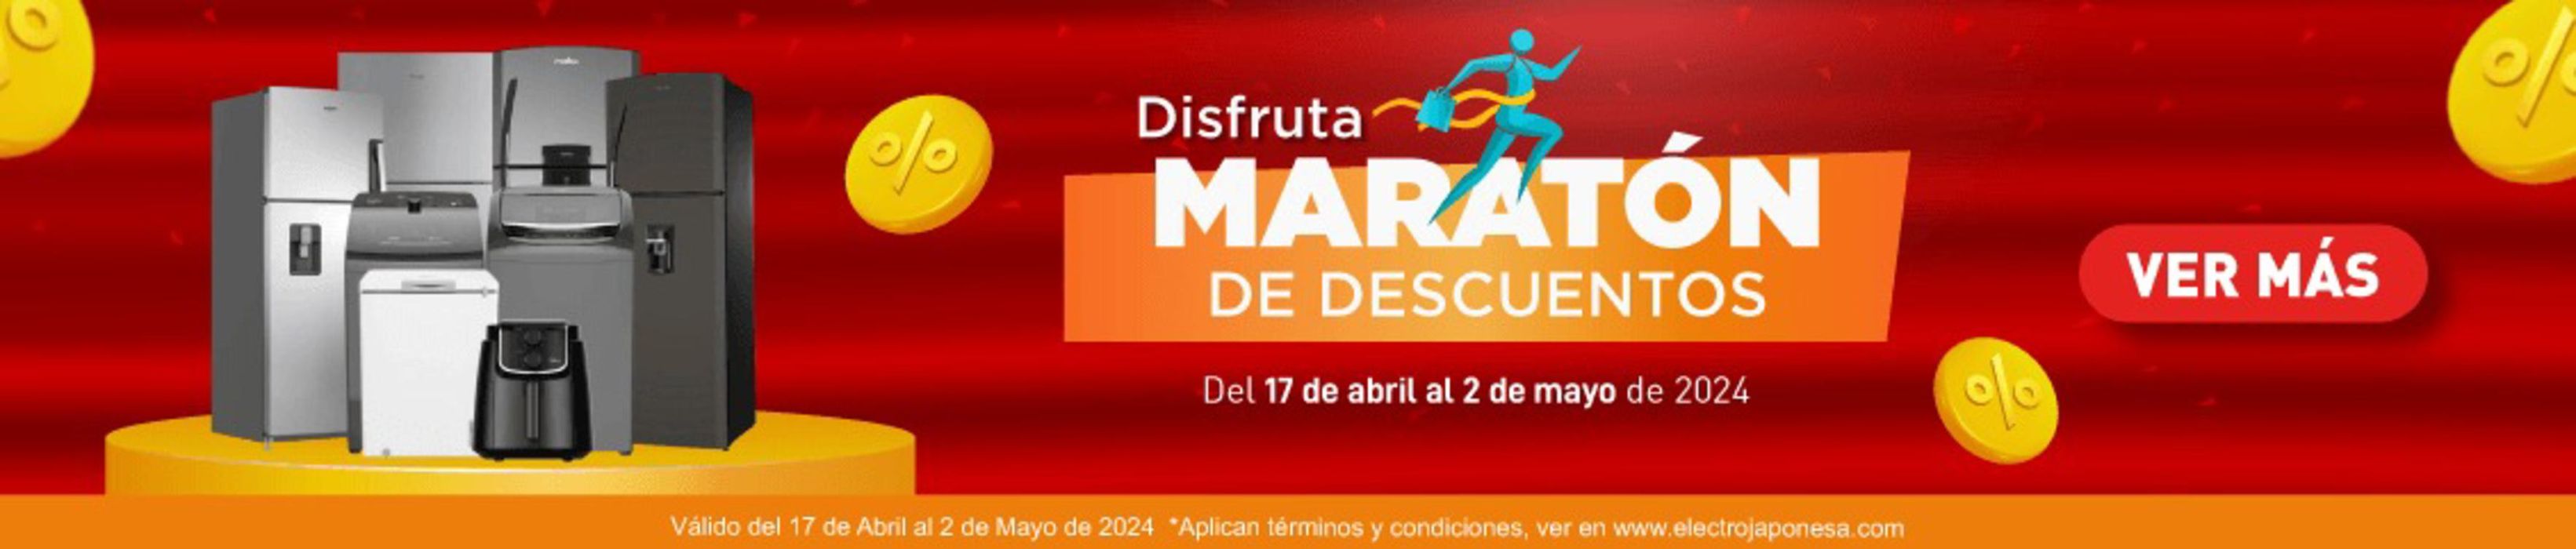 Catálogo Electrojaponesa en Cali | Maraton de descuentos | 30/4/2024 - 2/5/2024